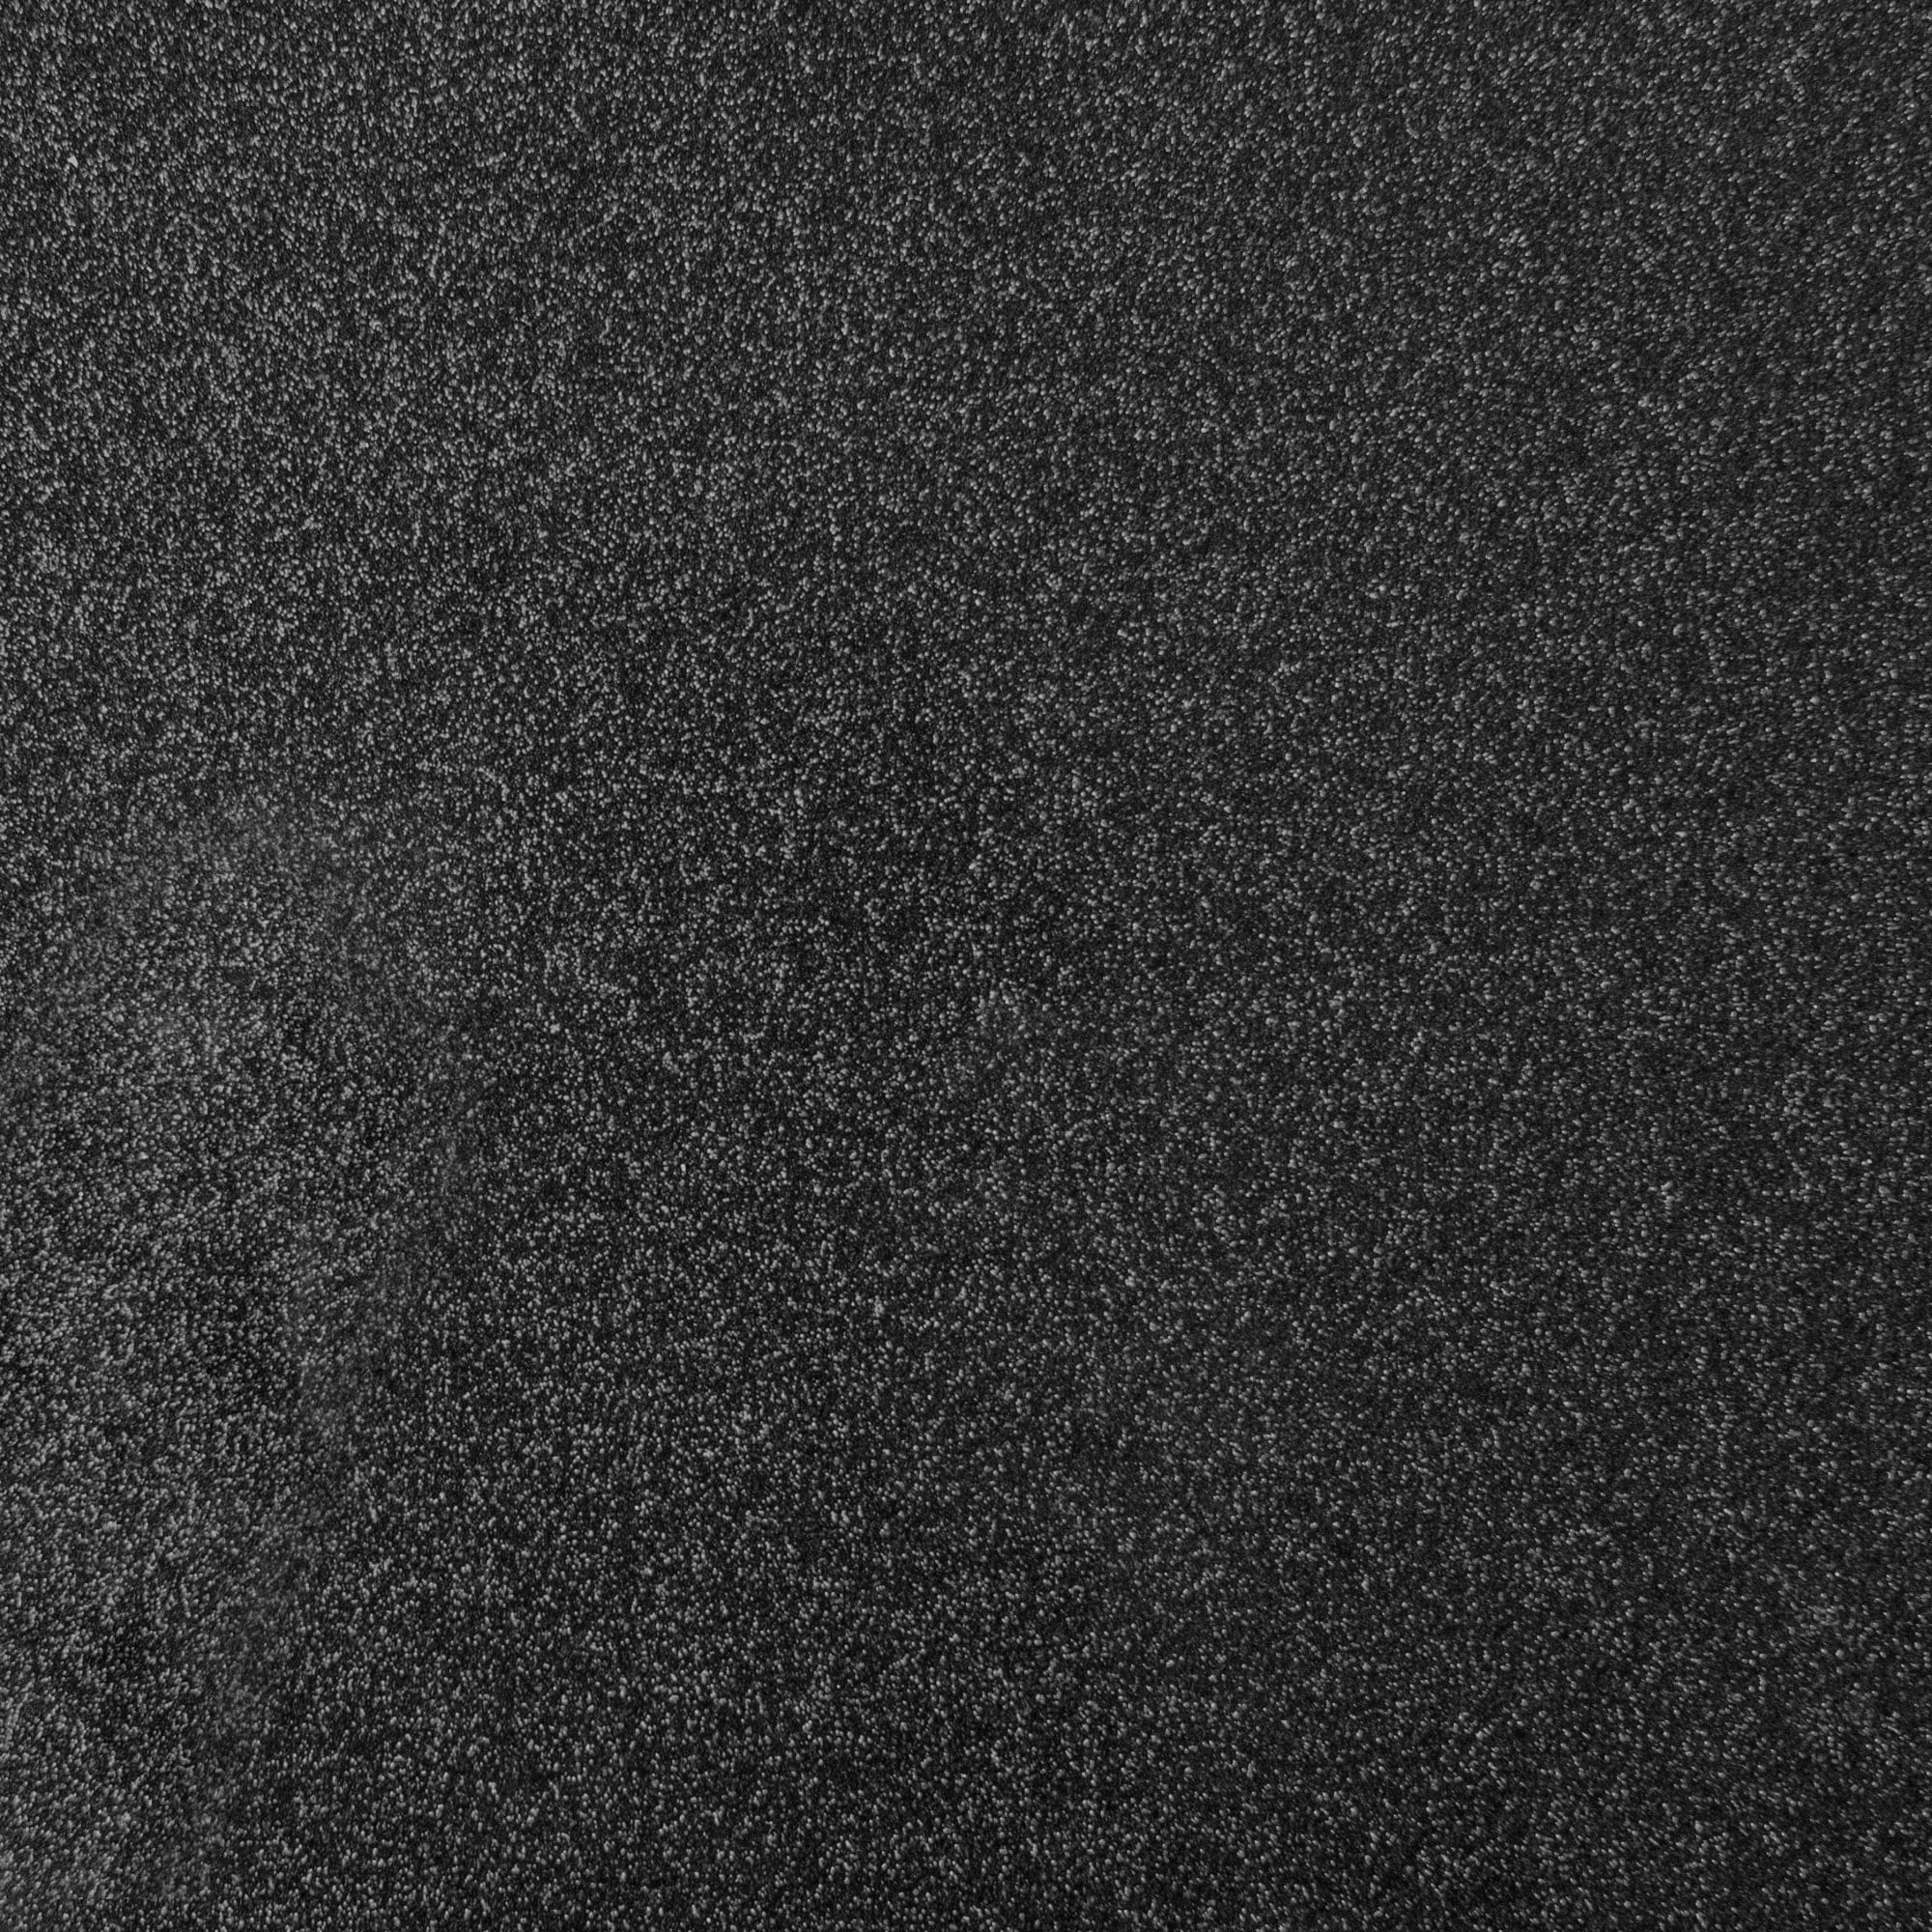 Cricut 3 ft. Black Smart Iron-On Glitter